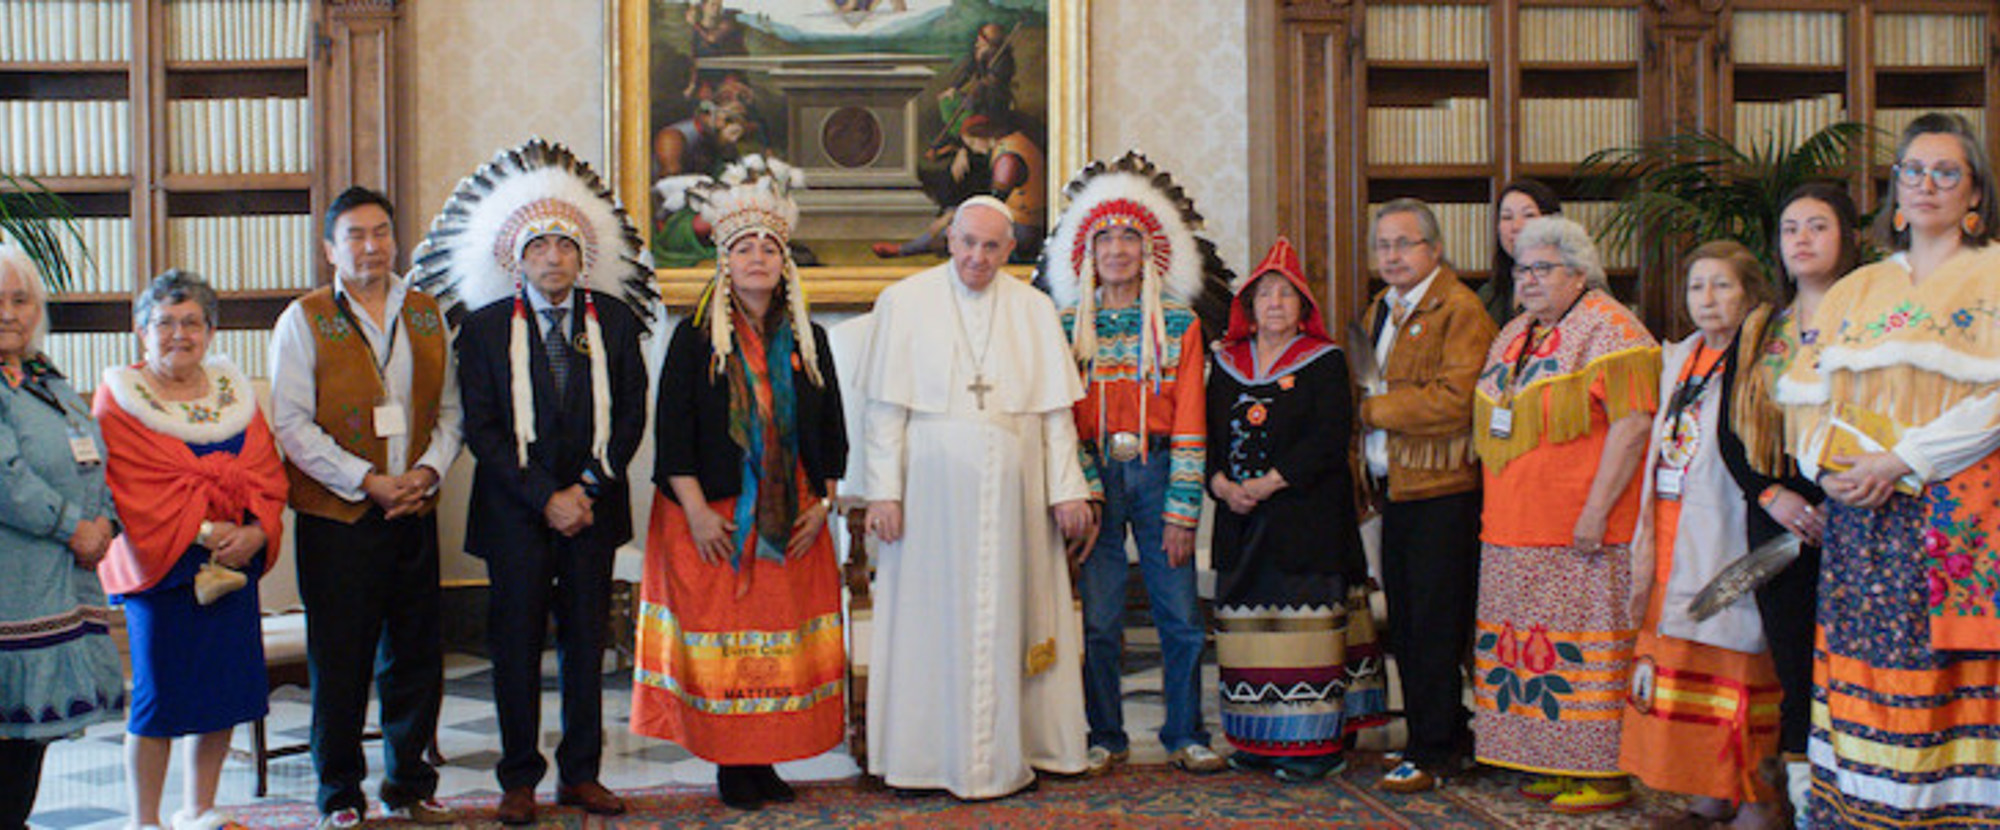 Papst Franziskus mit Mitgliedern der 'First Nations' (Kanada) am 31. März 2022 im Vatikan.